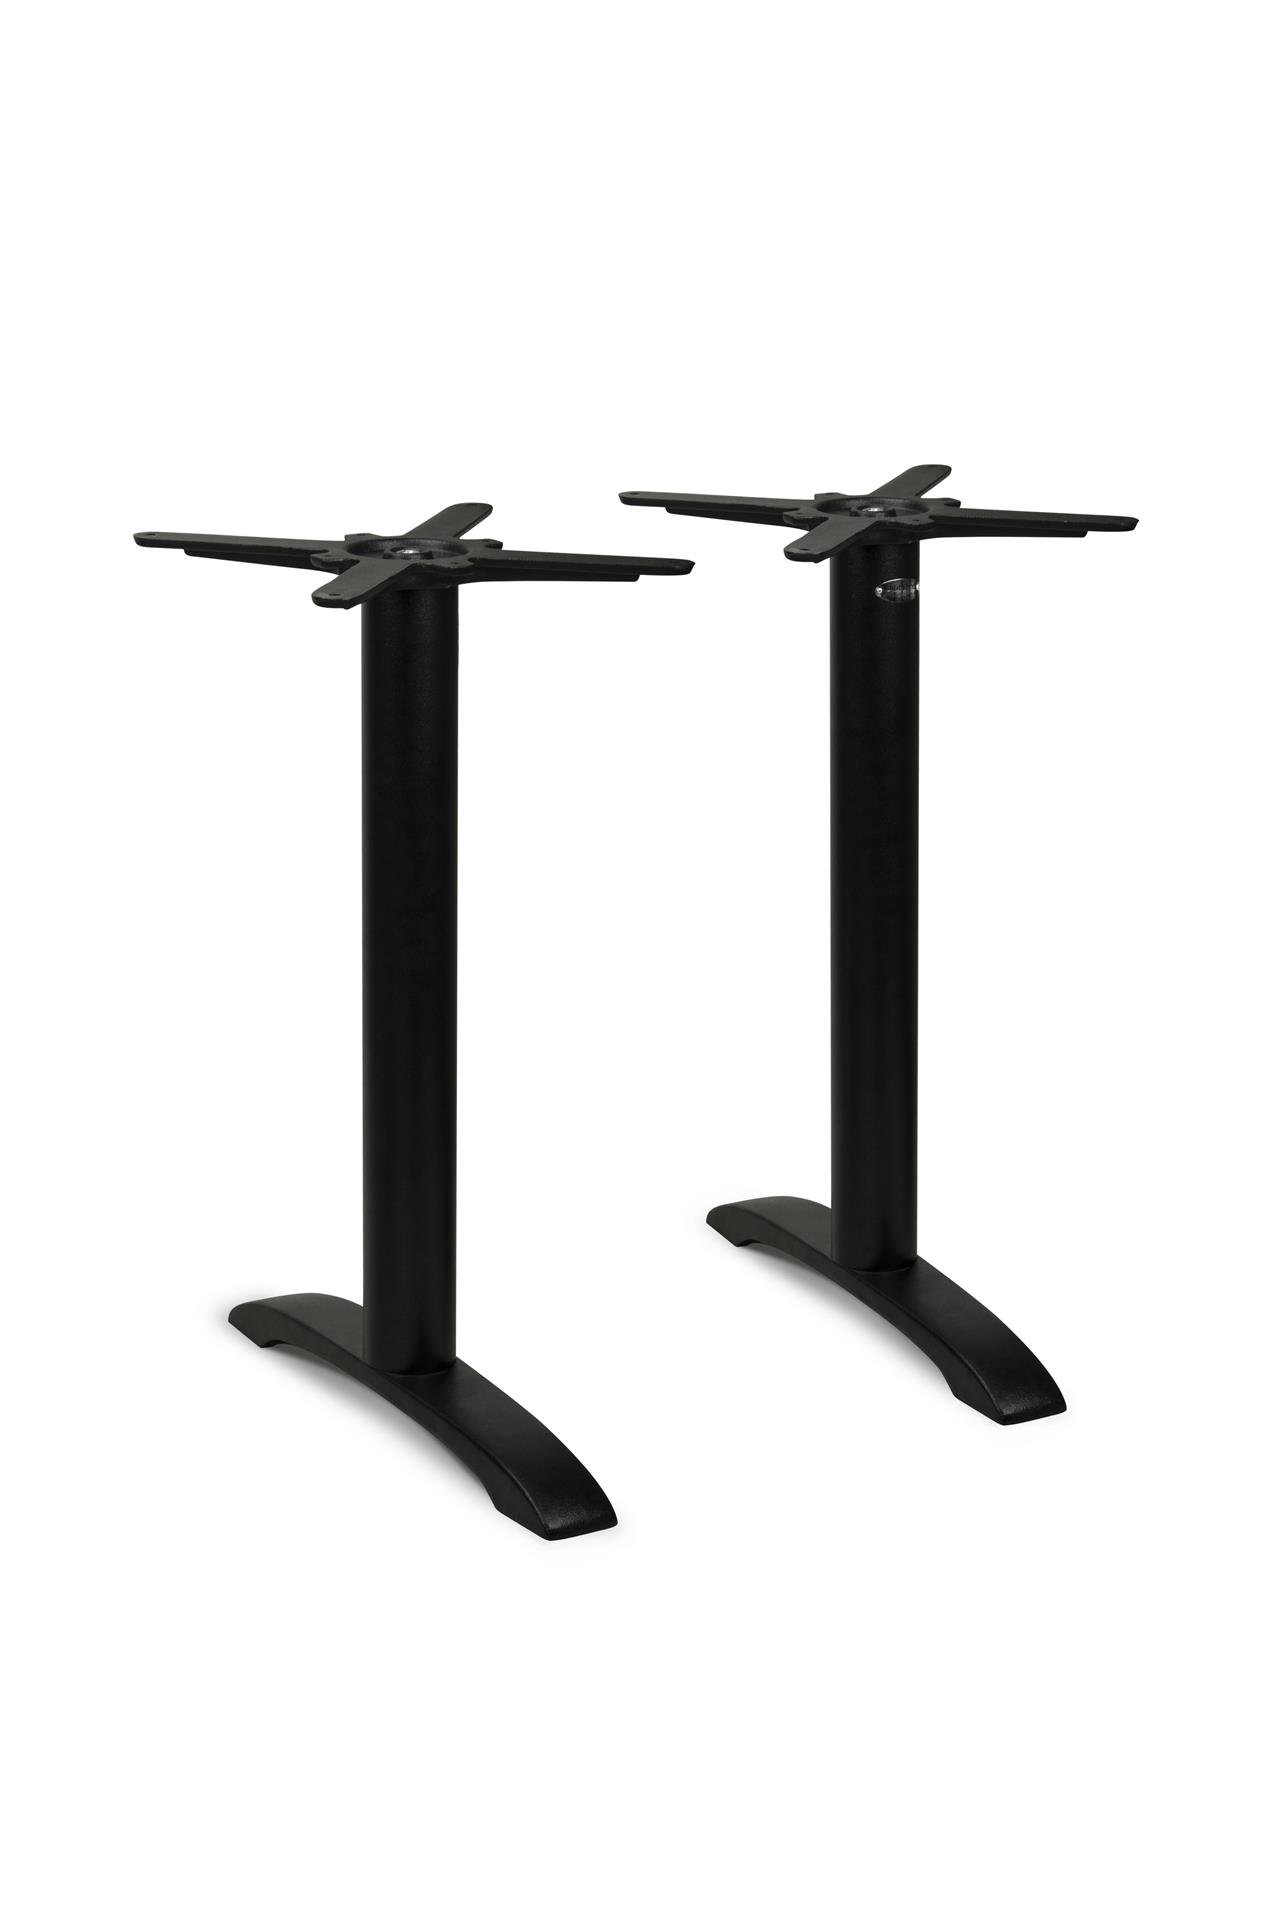 Gusseisen Tischgestell PJ7622 (Tischbein) mit 2 Einzelsäulen, pulverbeschichtet schwarz